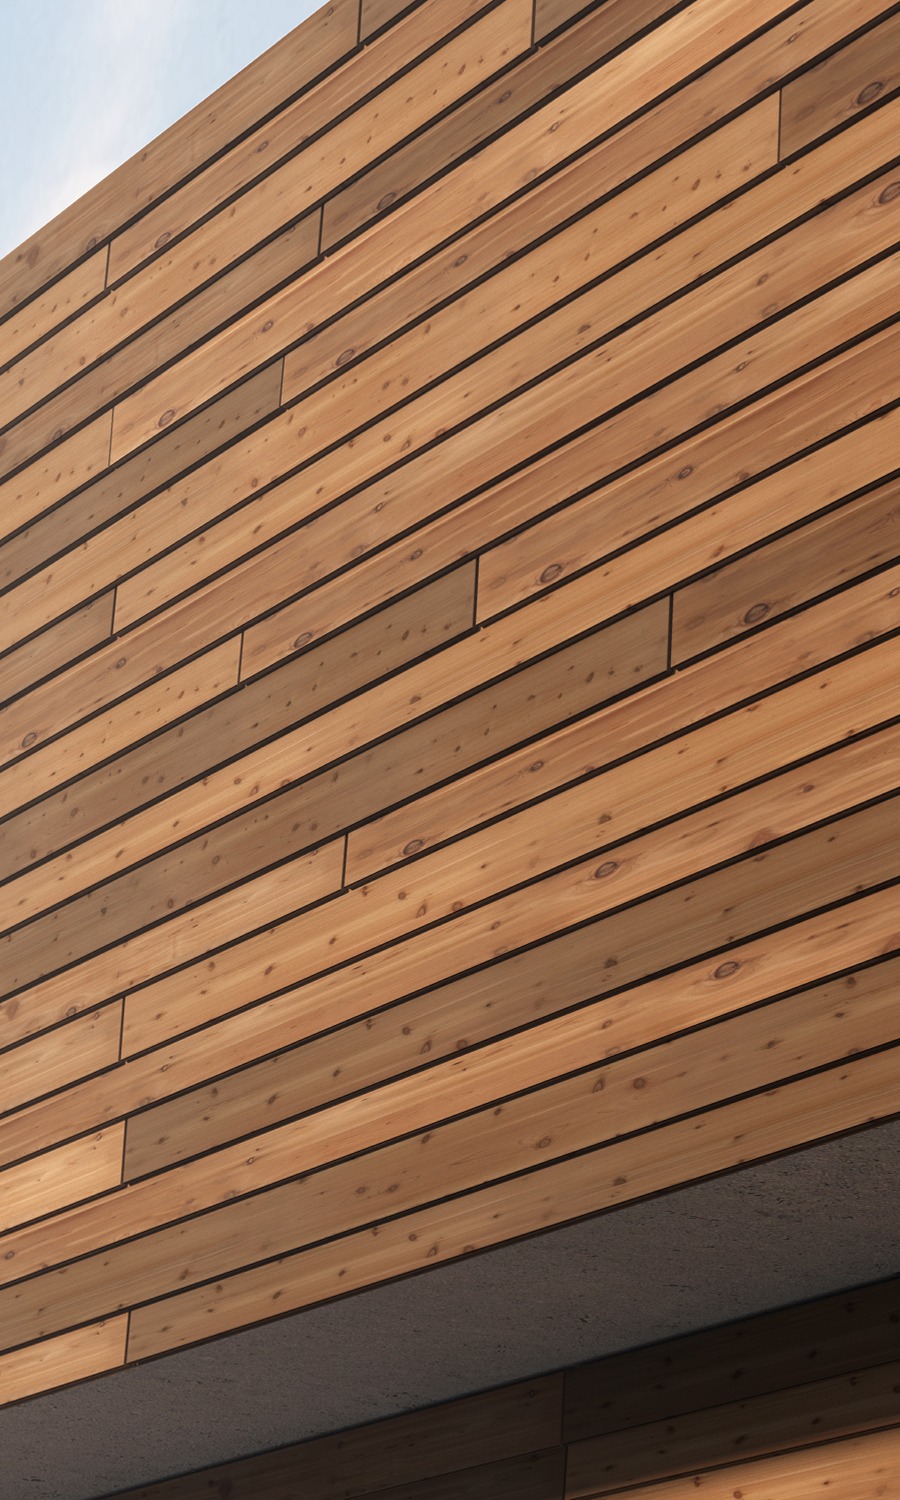 Bronsø thermo wood facade cladding